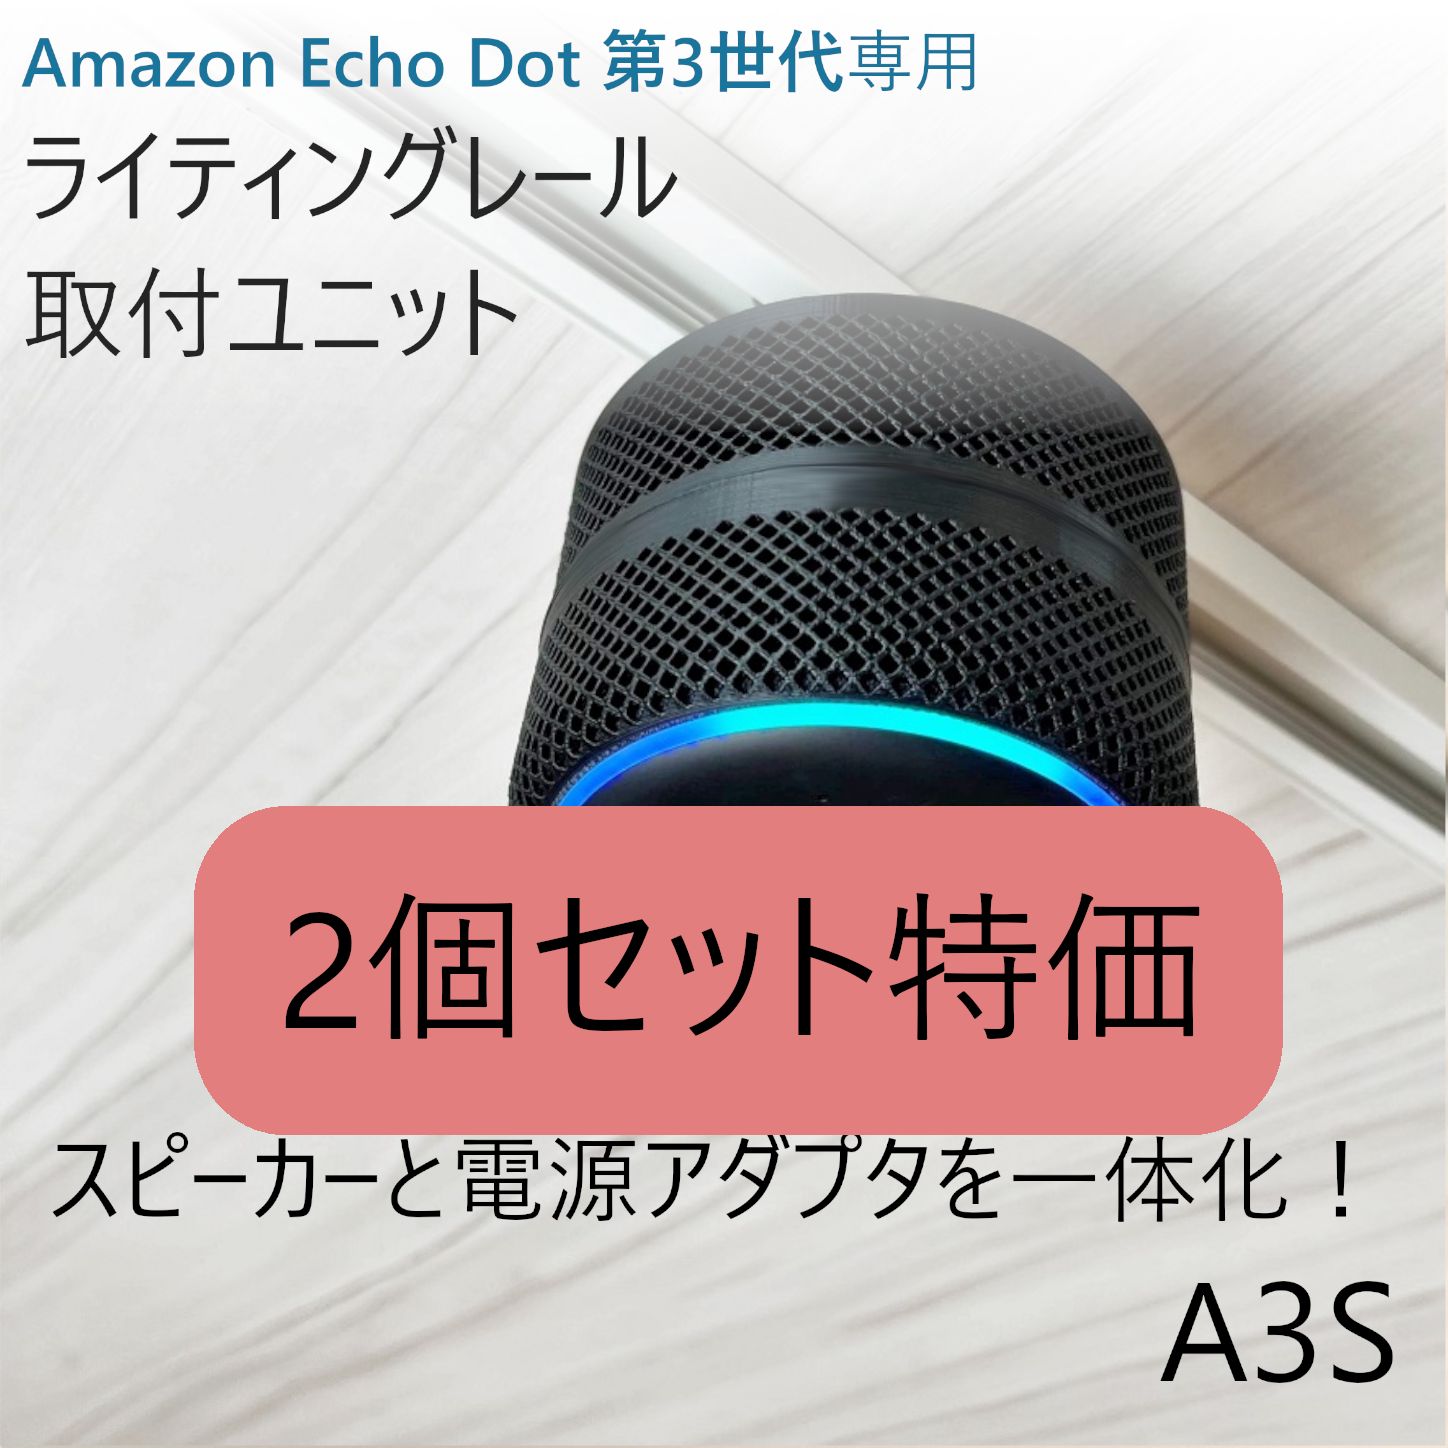 Amazon Echo Dot 第3世代 ライティングレール取付ユニット - ゆゆ